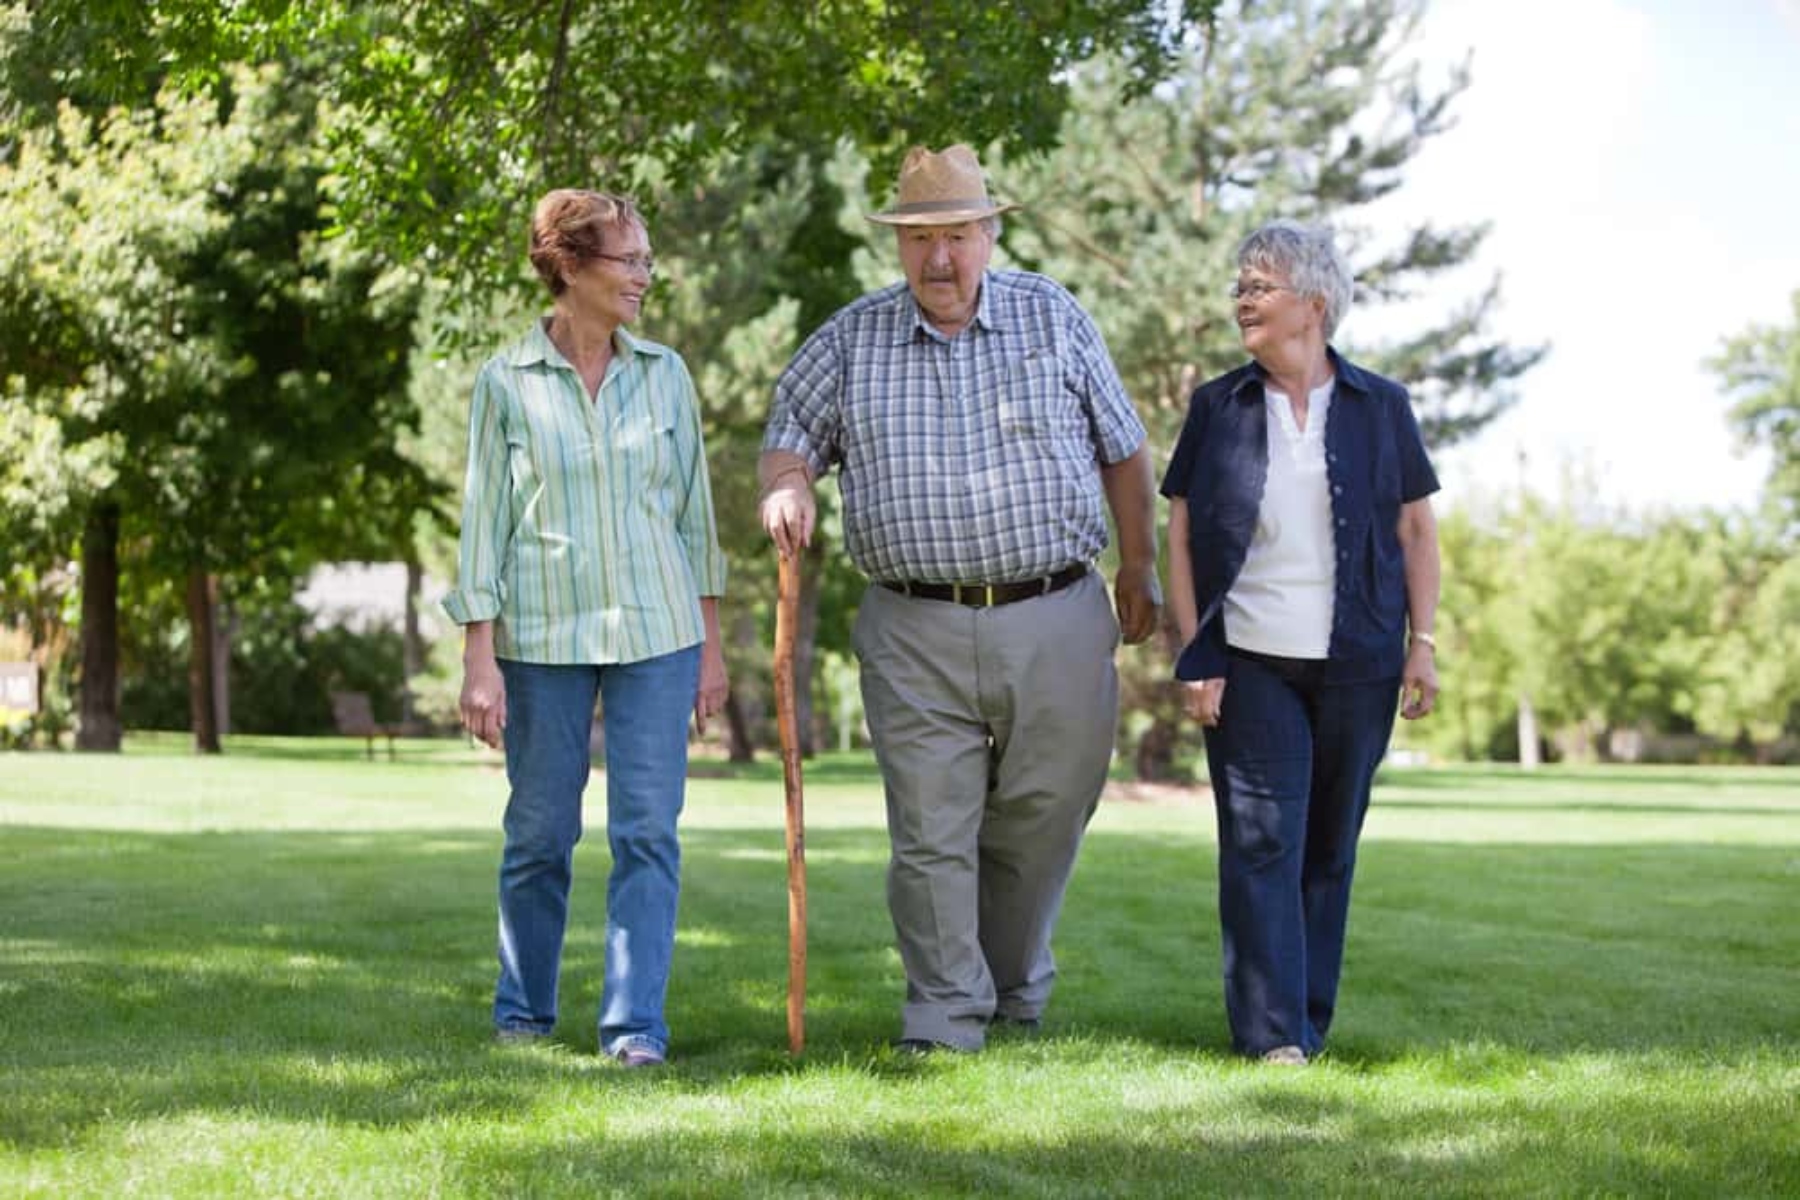 Καλοκαίρι ηλικιωμένοι: Καλοκαιρινές συμβουλές υγείας για ηλικιωμένους